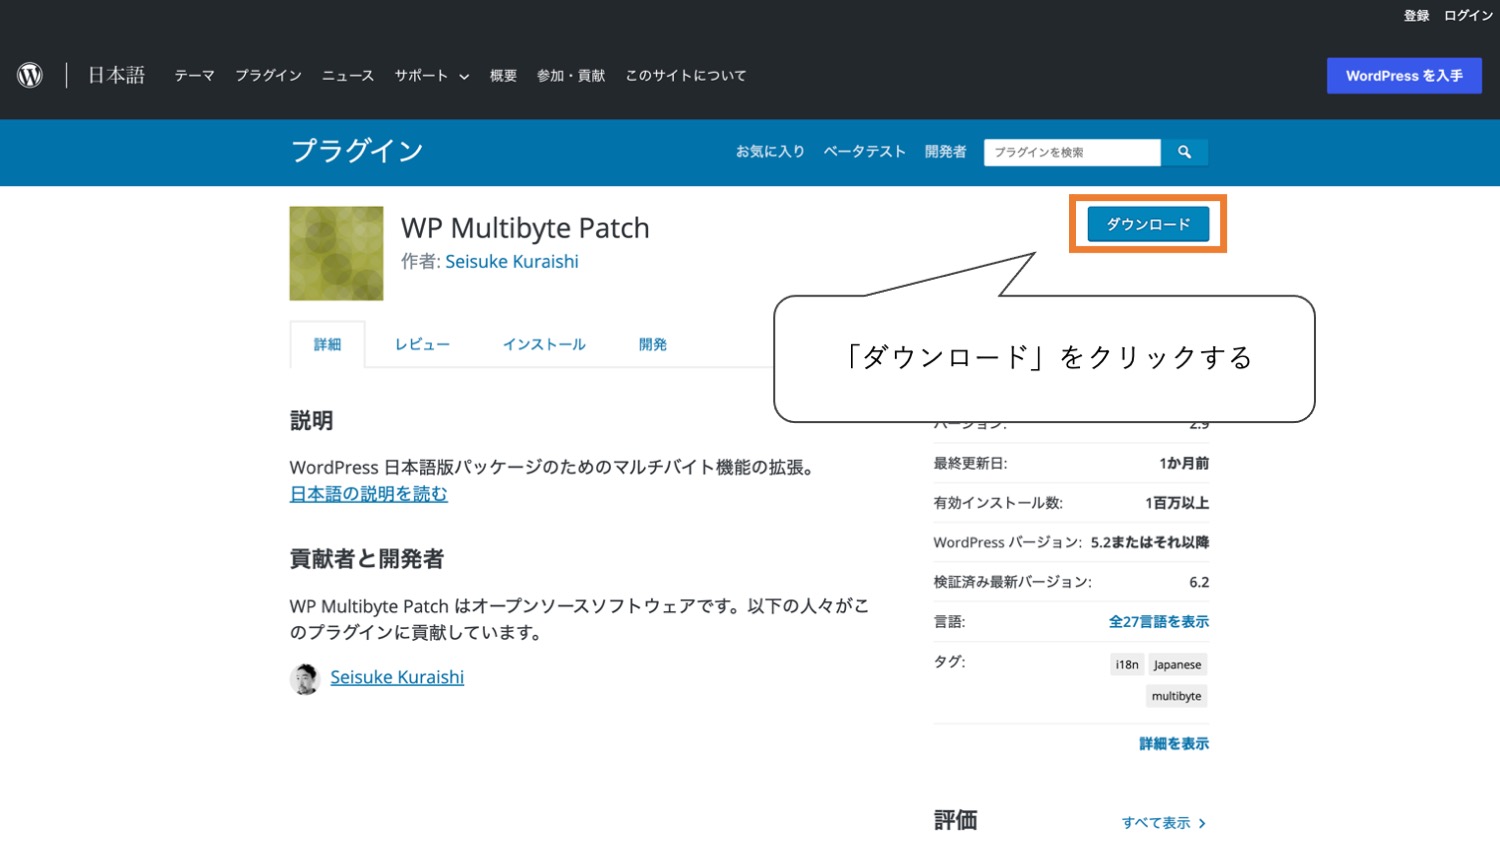 Wp Multibyte Patchの公式サイトで「ダウンロード」をクリックする